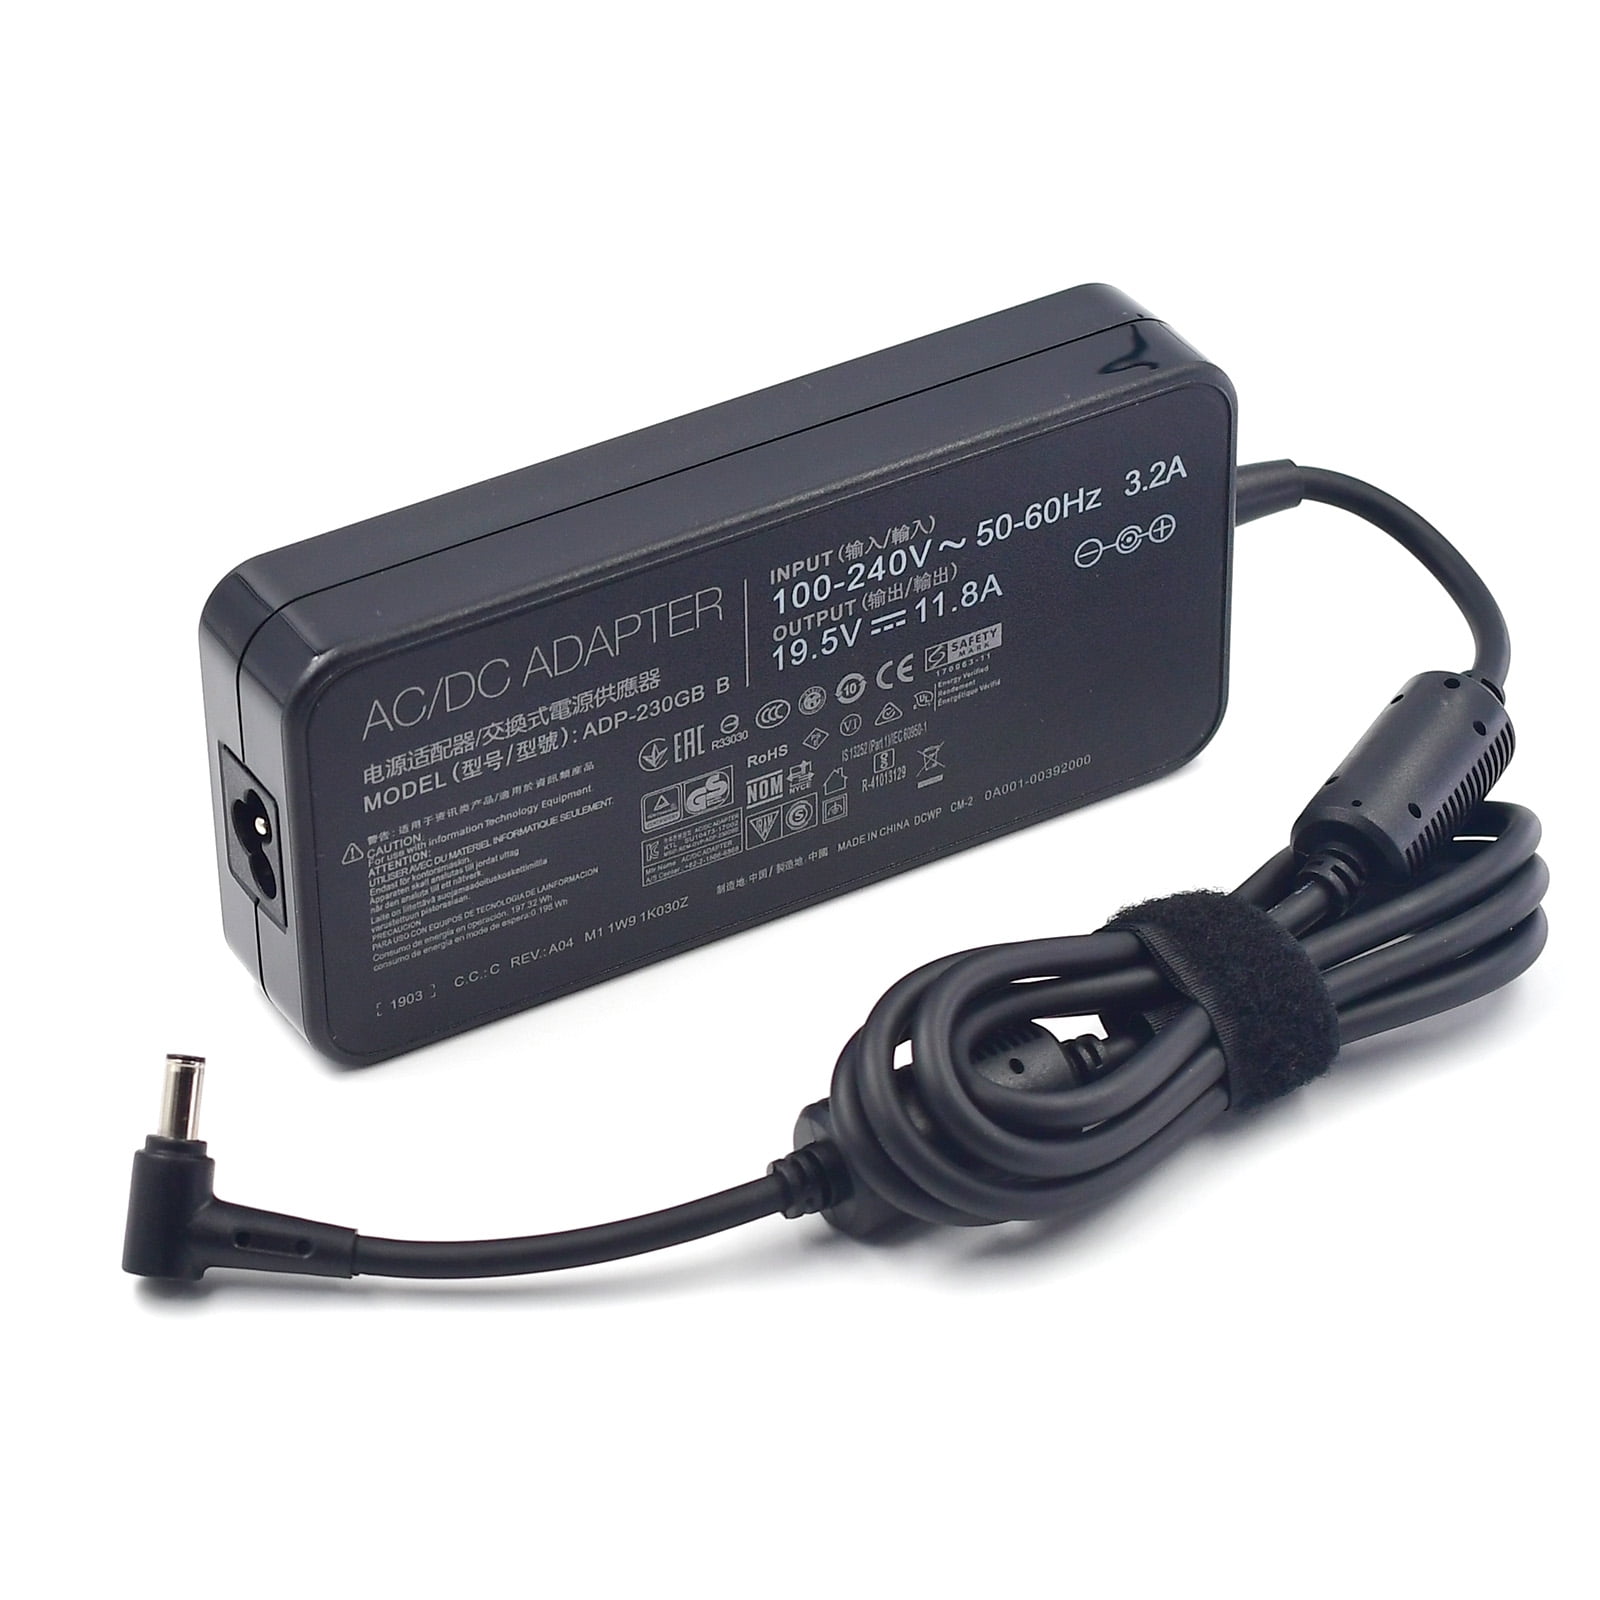 230W 19.5V 11.8A AC Adapter Charger for ASUS ROG Strix G731GU-EV011T  Zephyrus M GU502GU-ES014T ADP-230GB B 